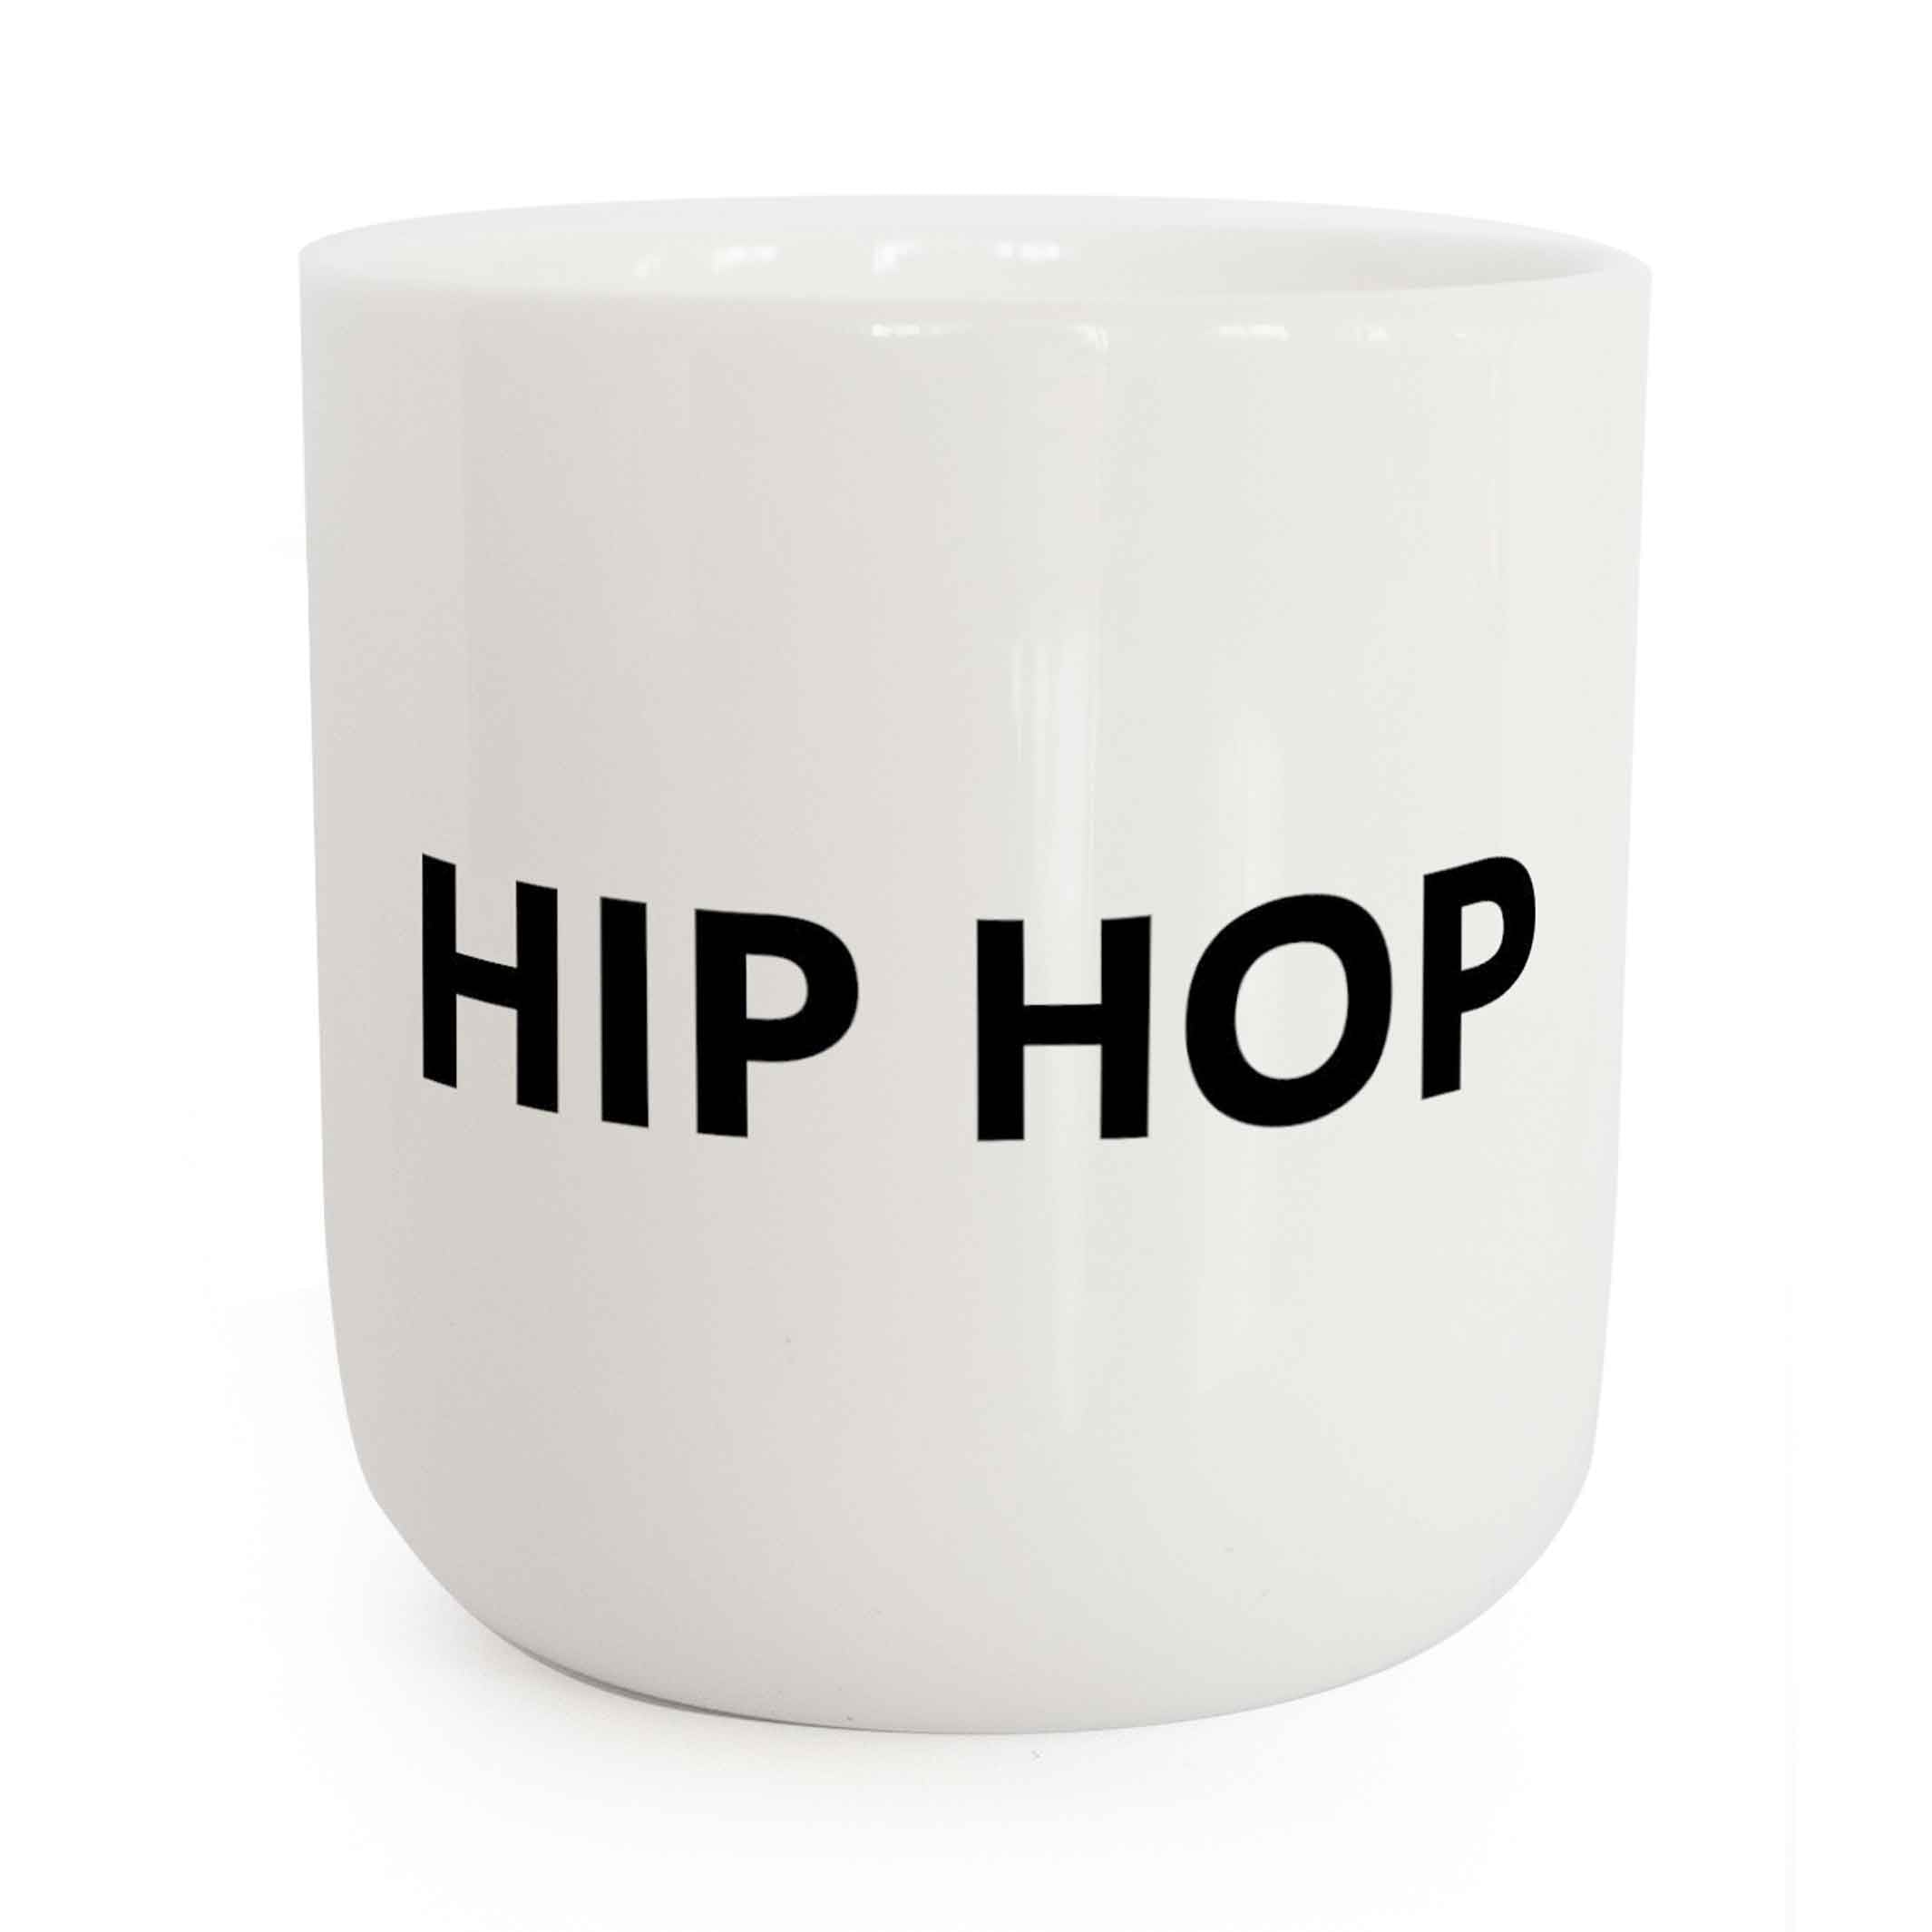 HIP HOP | weisser Kaffee- & Tee-BECHER mit schwarzer Typo | Beat Serie | PLTY